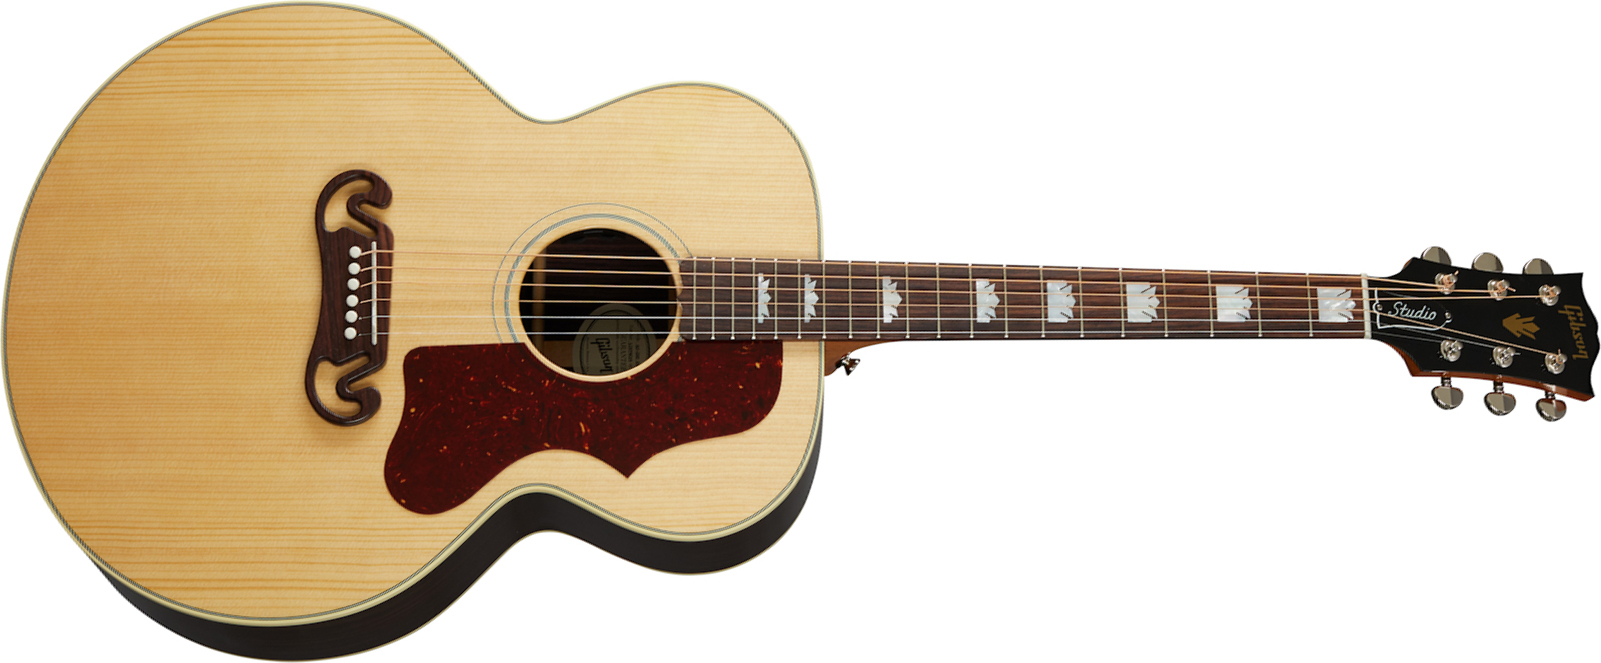 Gibson Sj-200 Studio Rosewood 2020 Super Jumbo Epicea Palissandre Rw - Antique Natural - Elektro-akoestische gitaar - Main picture